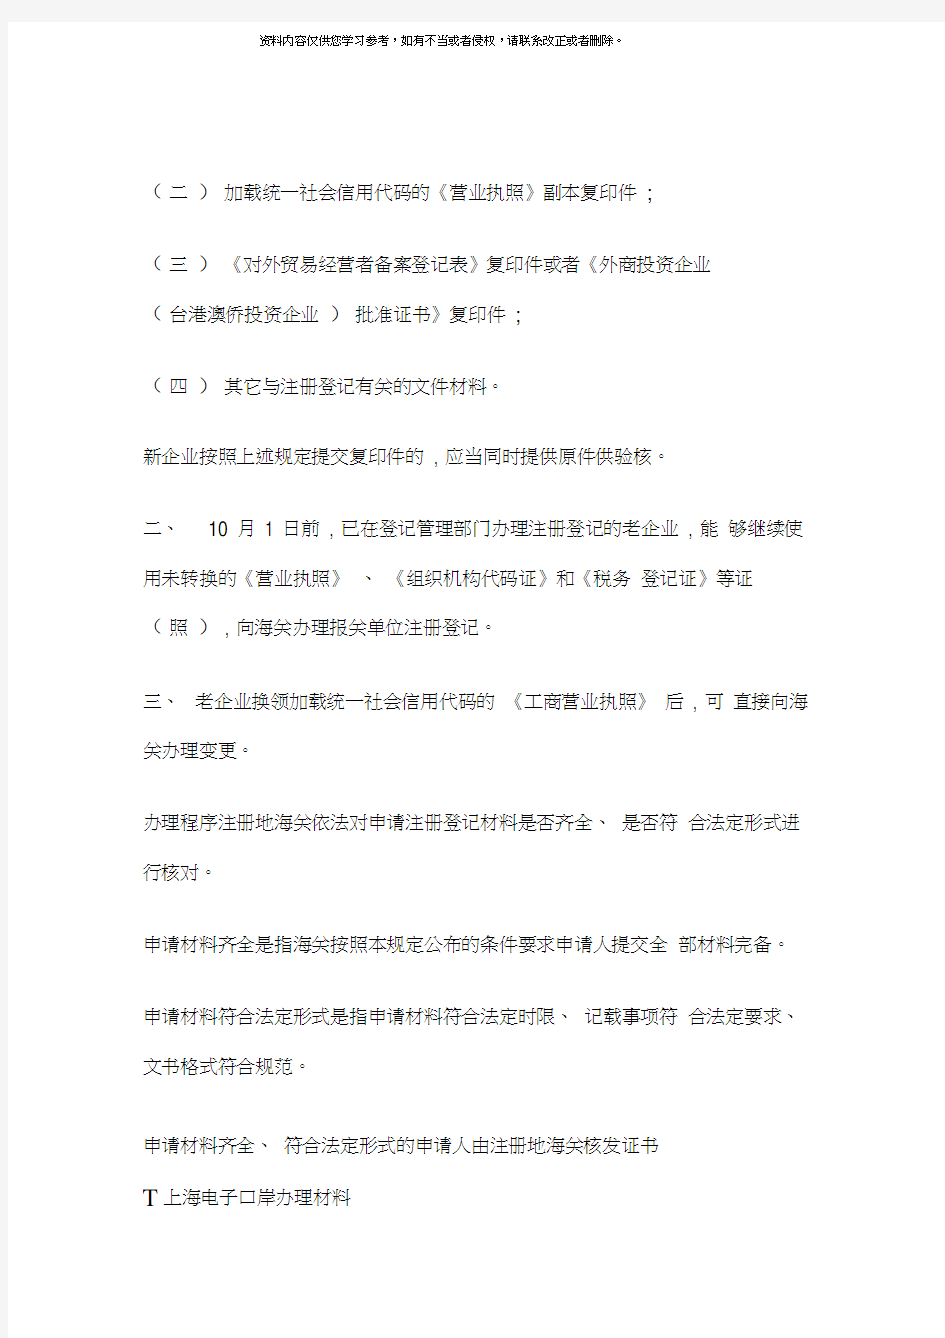 上海电子口岸办理流程模板